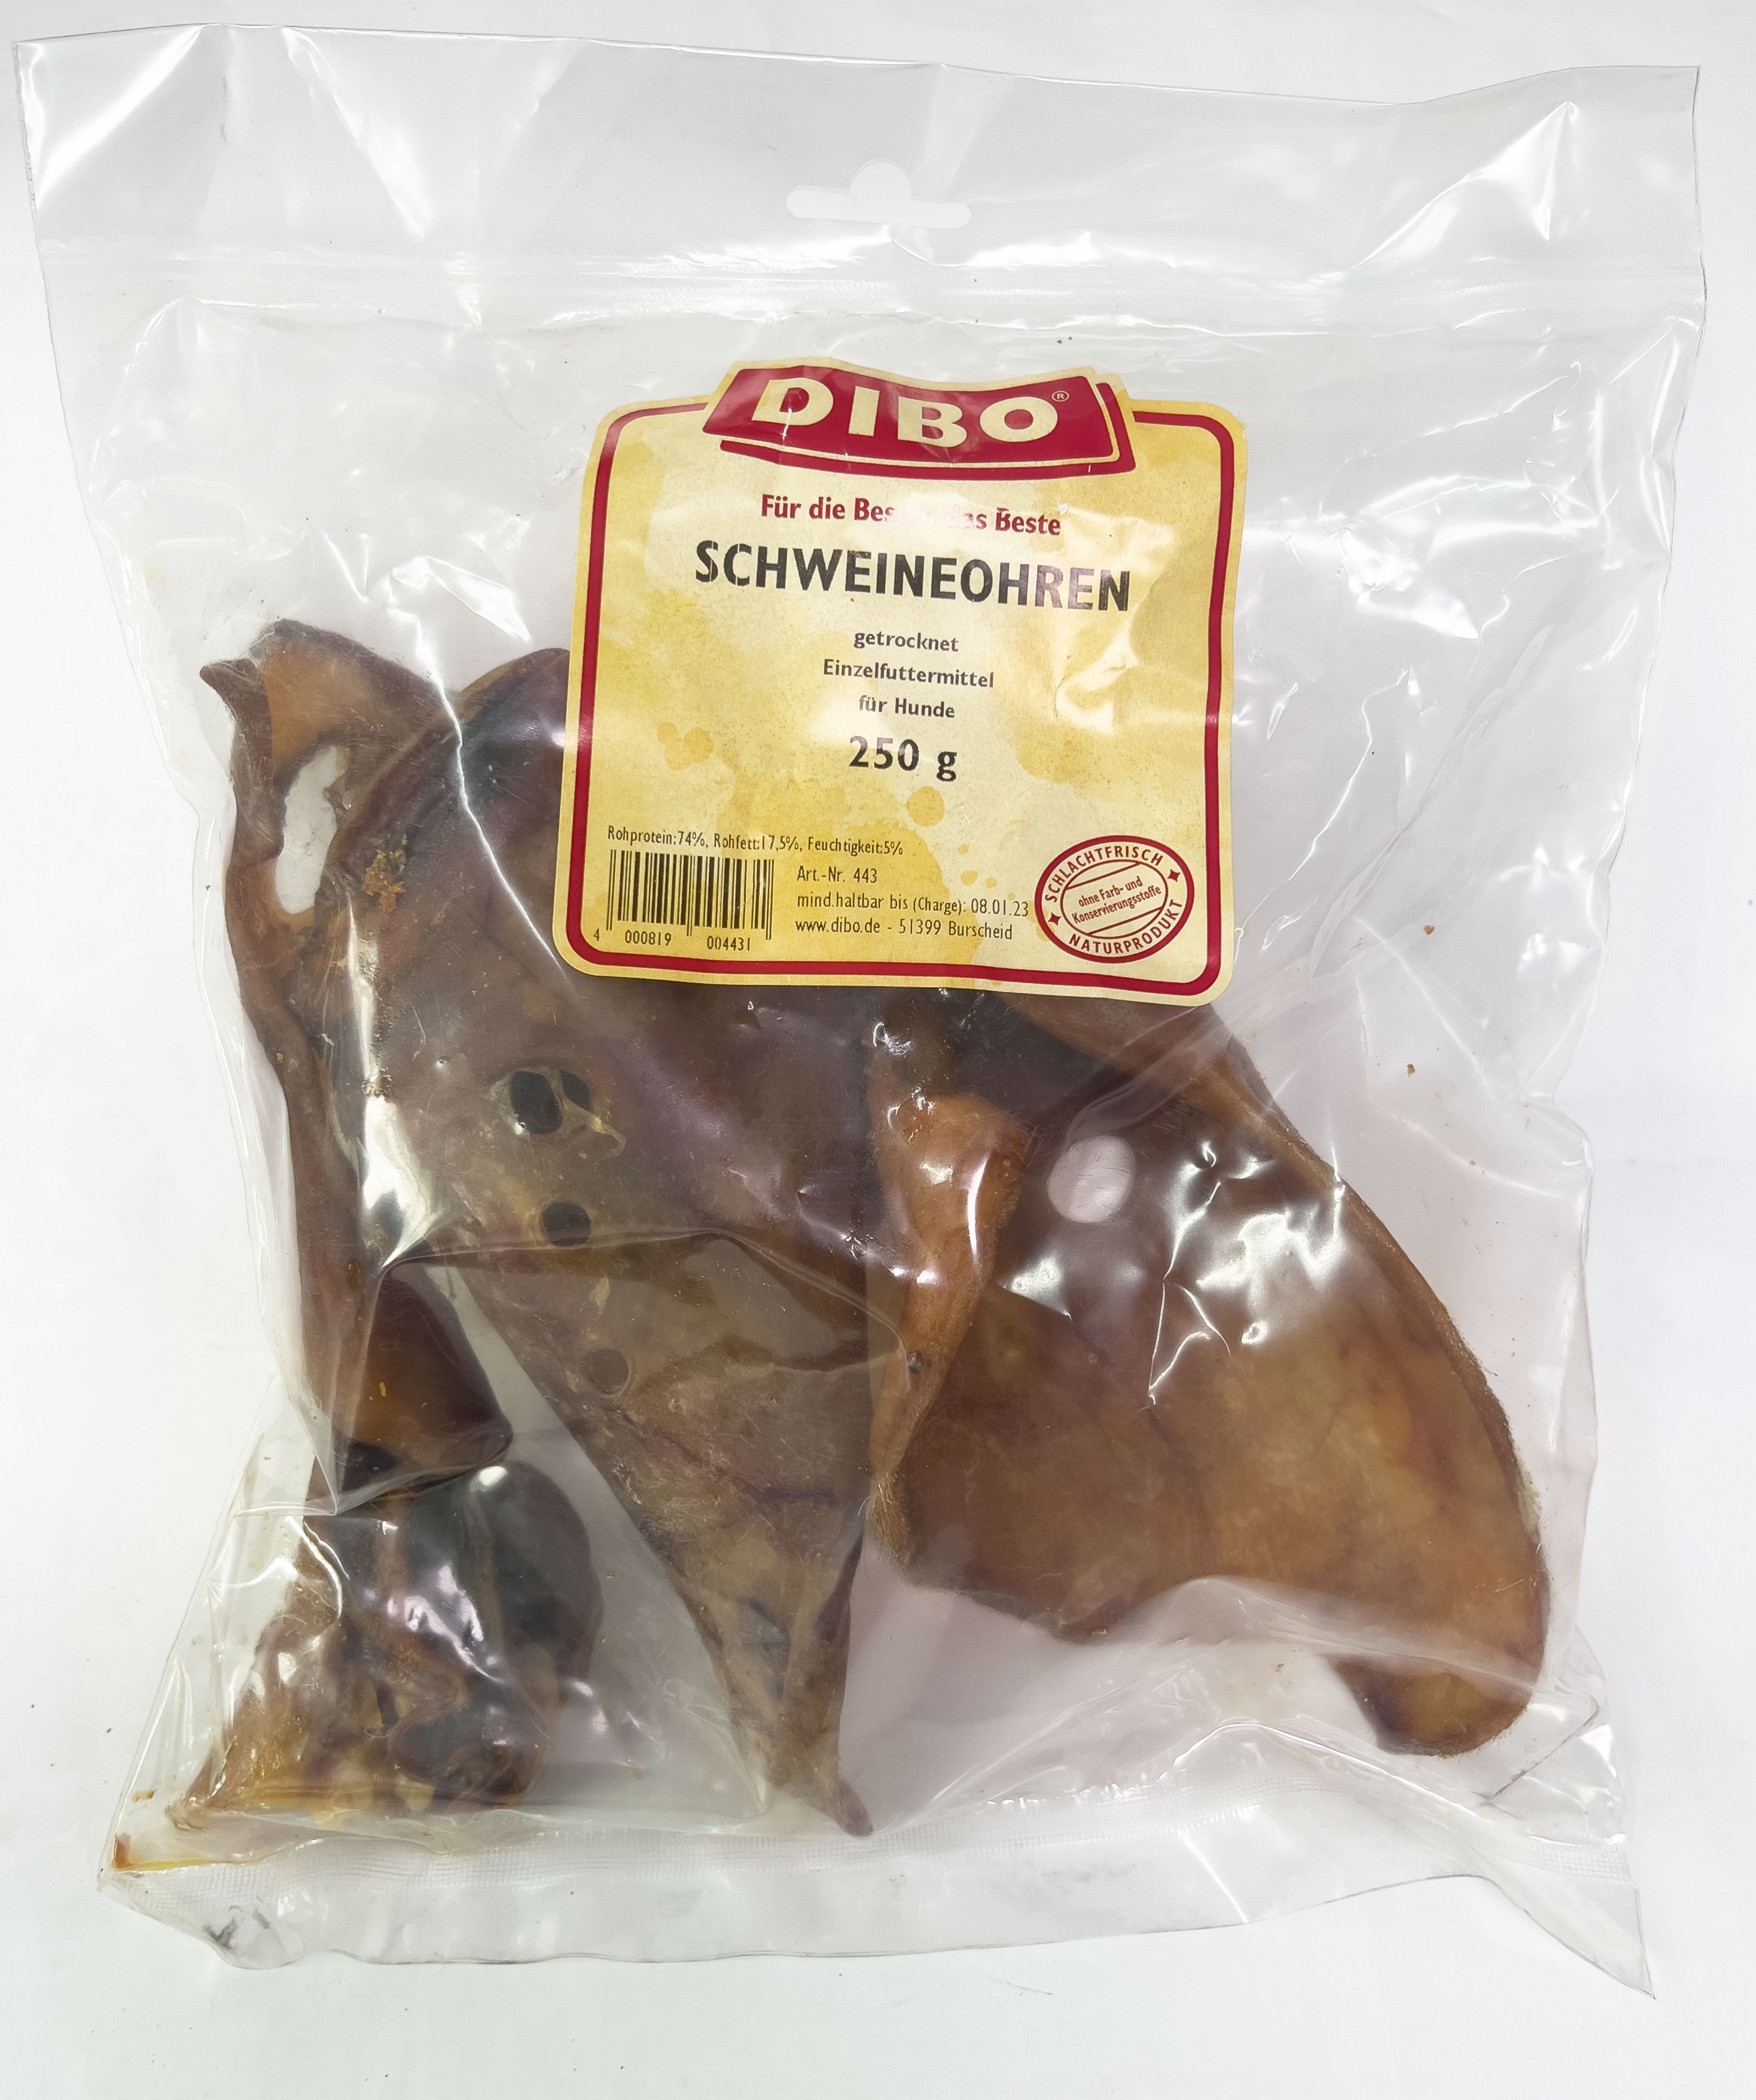 DIBO Schweineohren Leckerli für Hunde - 250 g-Packung ✔️ für 6,70 ✔️ Quebag Agrar Shop